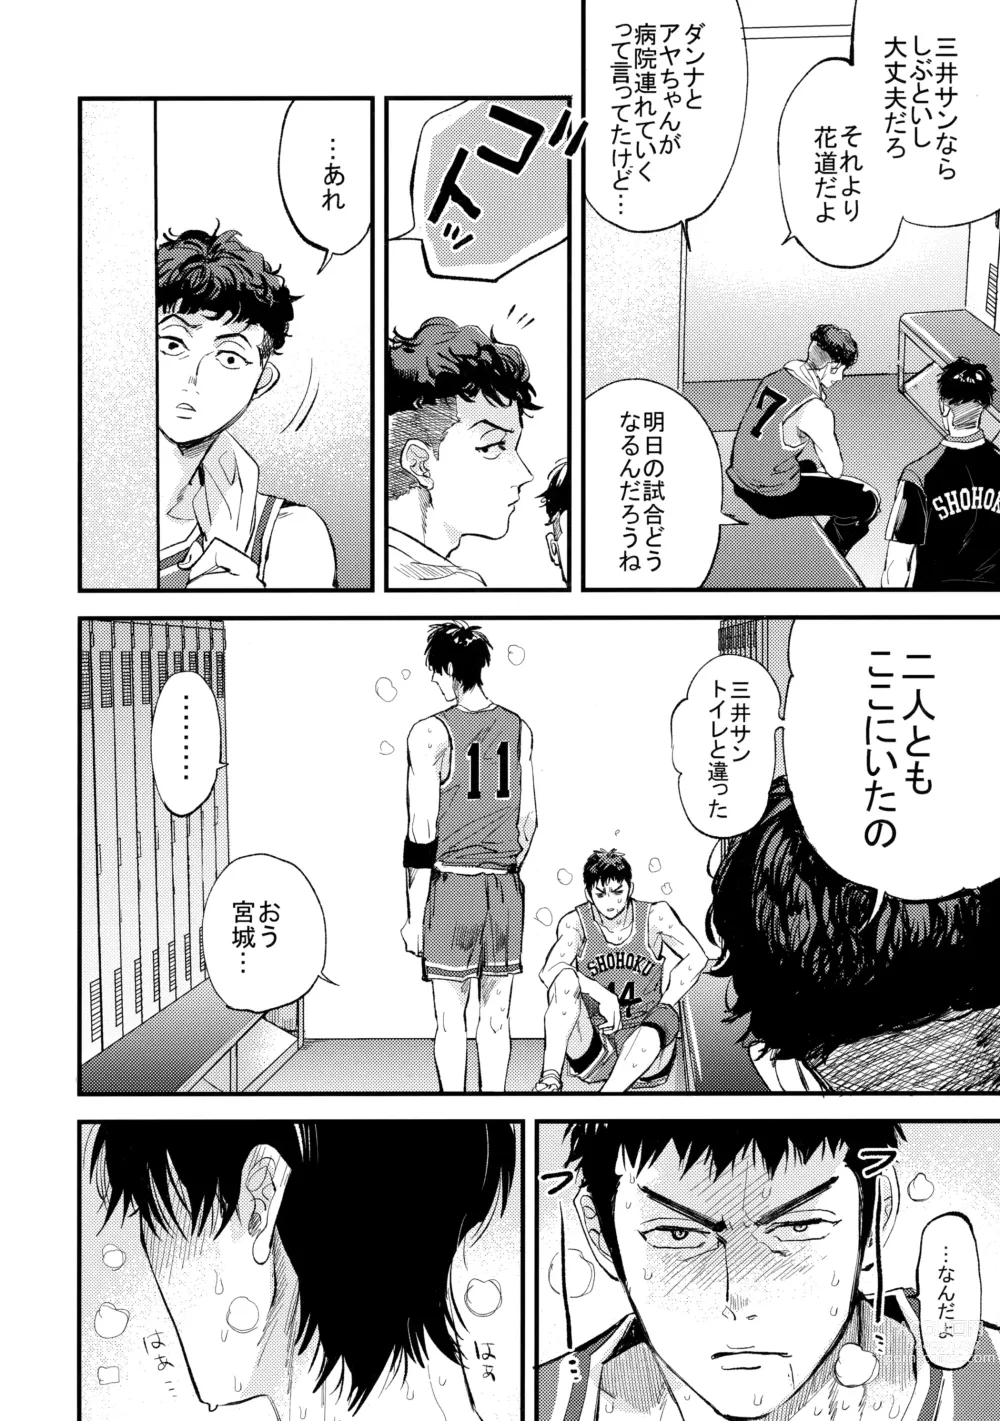 Page 13 of doujinshi Hajimete no,